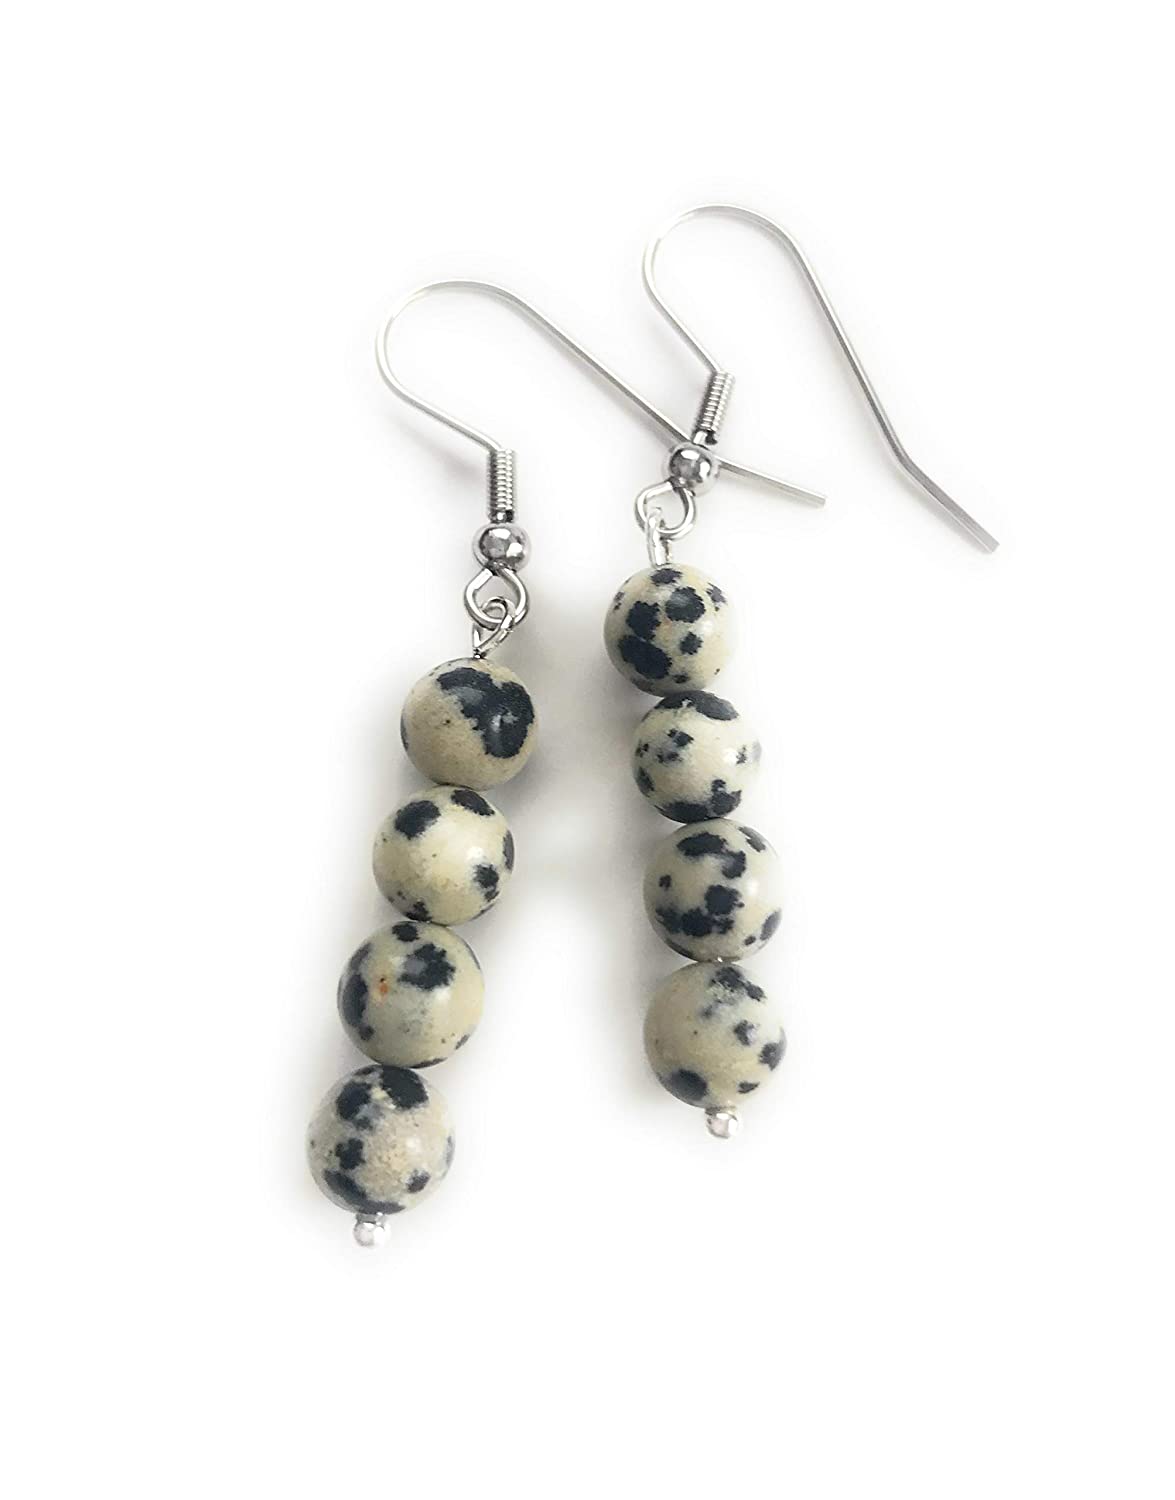 Dalmatian Gemstone Beaded Dangle Earrings from Scott D Jewelry Designs